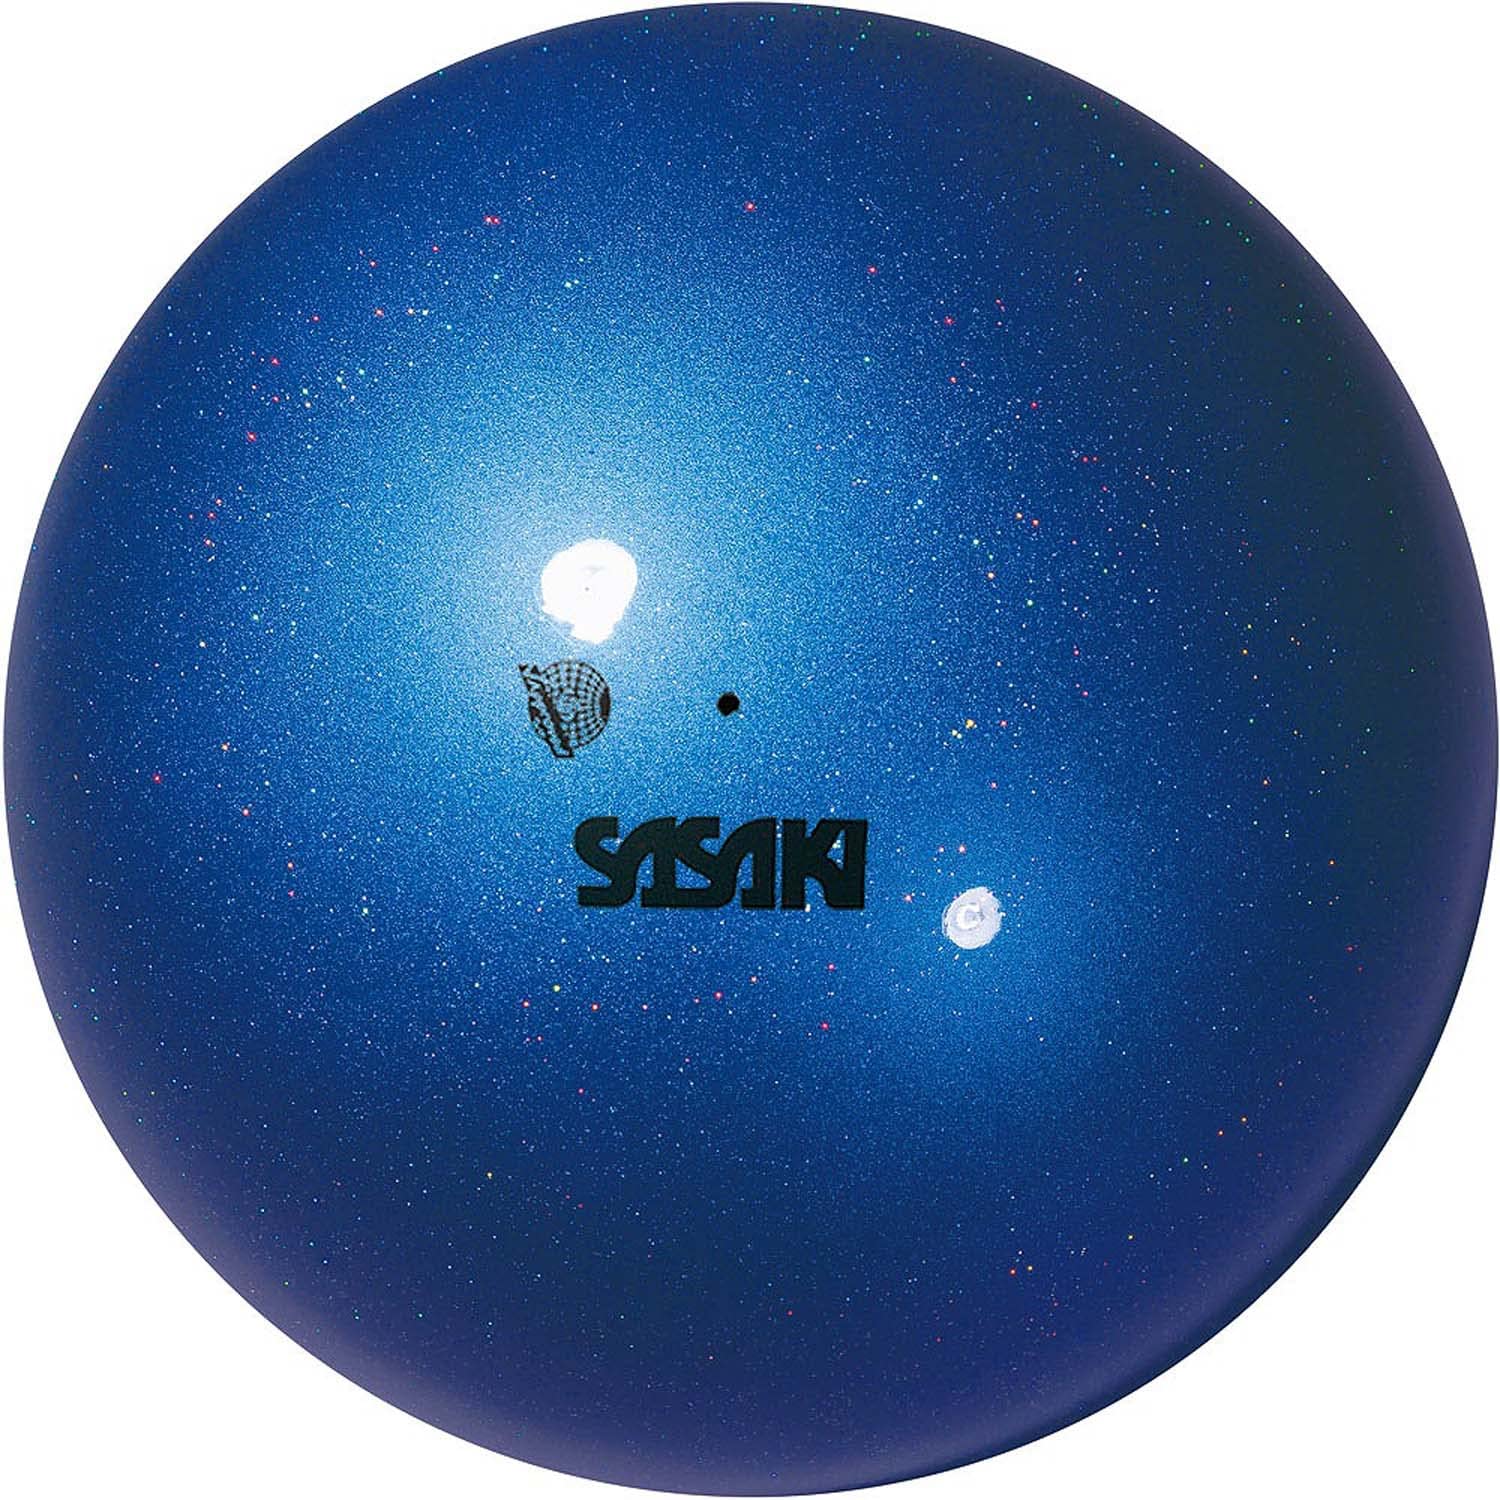 ・ラピスブルー _ M207AUF・素材:ゴム・サイズ:径18.5cm・重量:400g以上・仕様:F.I.G.(国際体操連盟)により規格/品質を認証された認定マーク・原産国:日本吸い付くように手になじみ、まっすぐに転がるSASAKIのボール。 光、角度、遠近により異なる表情で魅せるオーロラのような色彩と輝き。